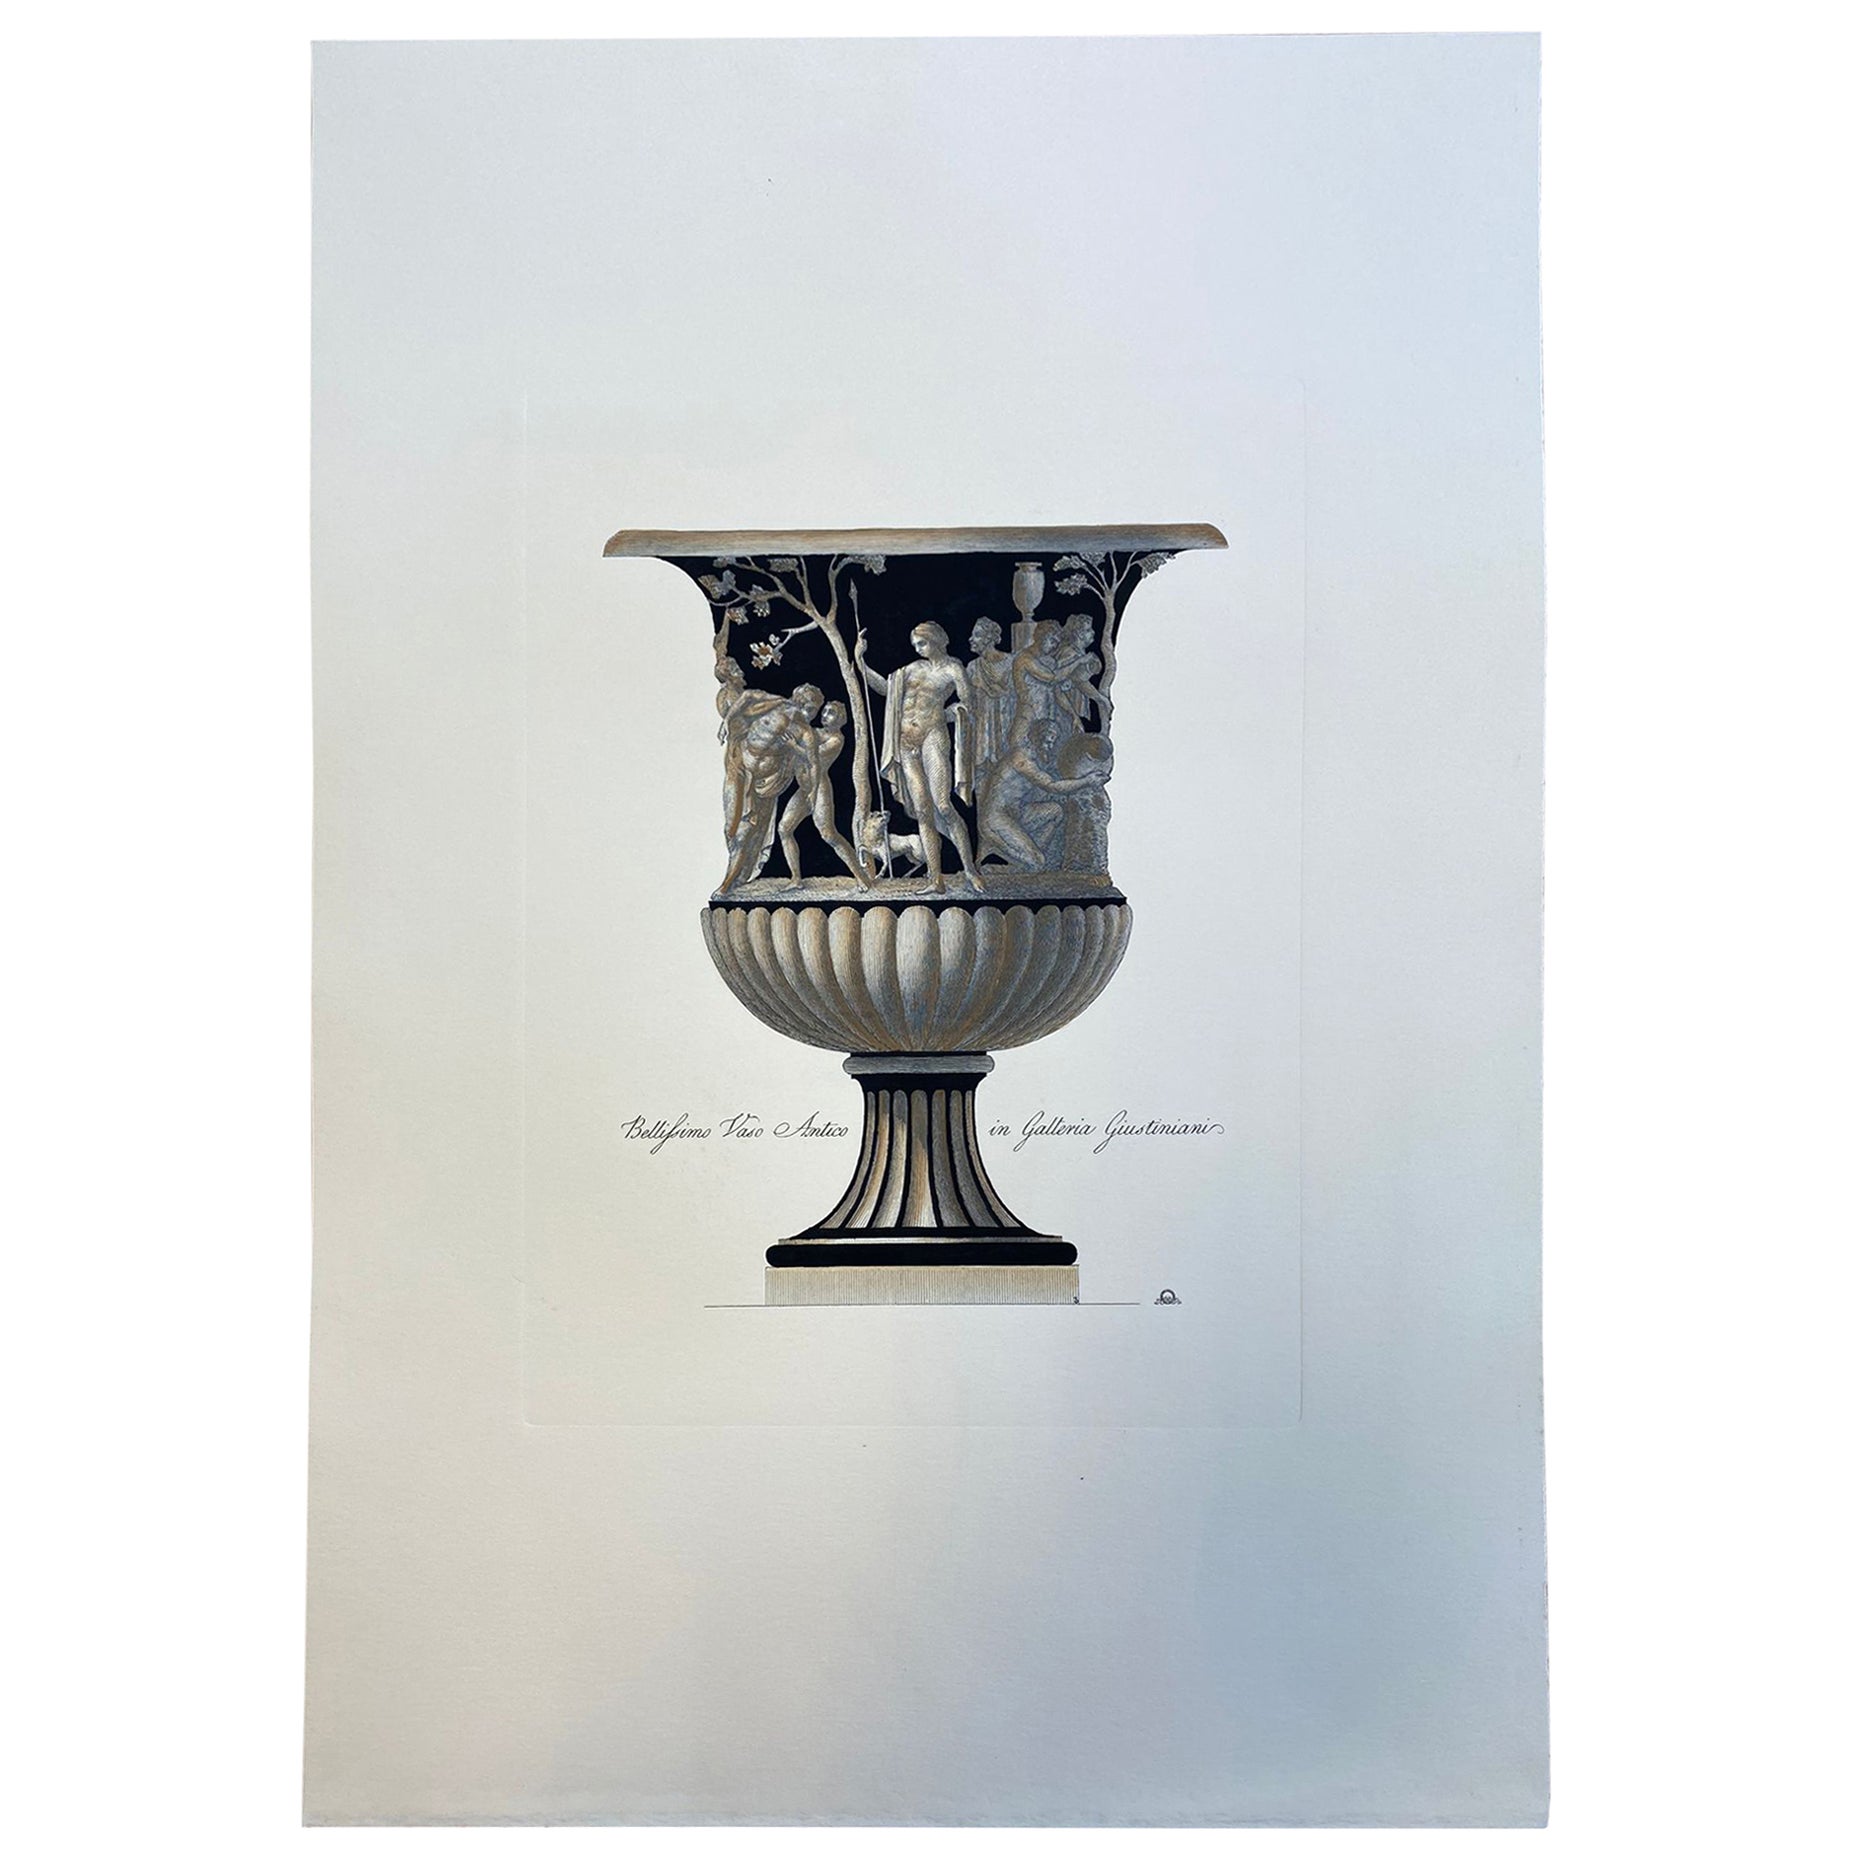 Contemporary Italian Hand Coloured Roman Vase Print " in Galleria Giustiniani"